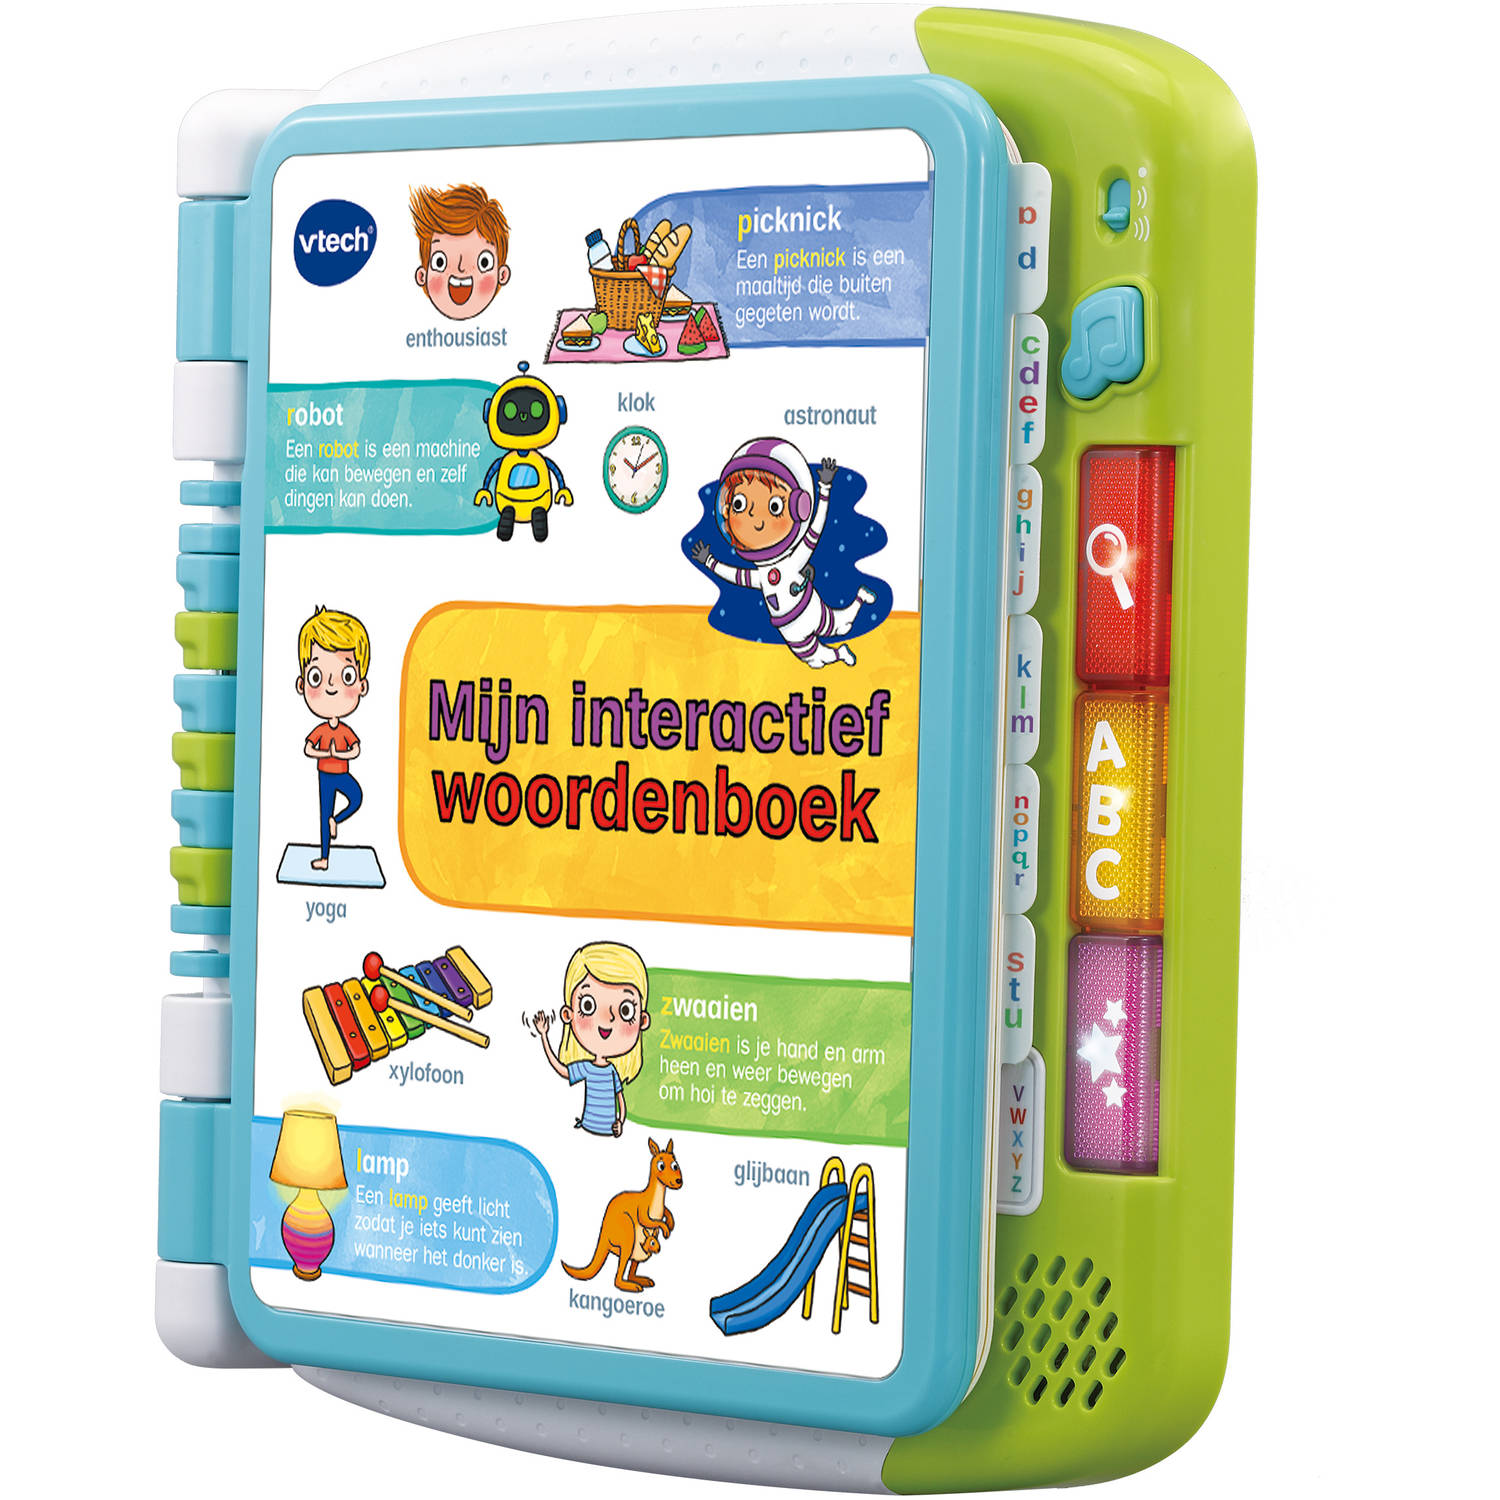 VTech kinderboek Mijn interactief Woordenboek wit-blauw-groen